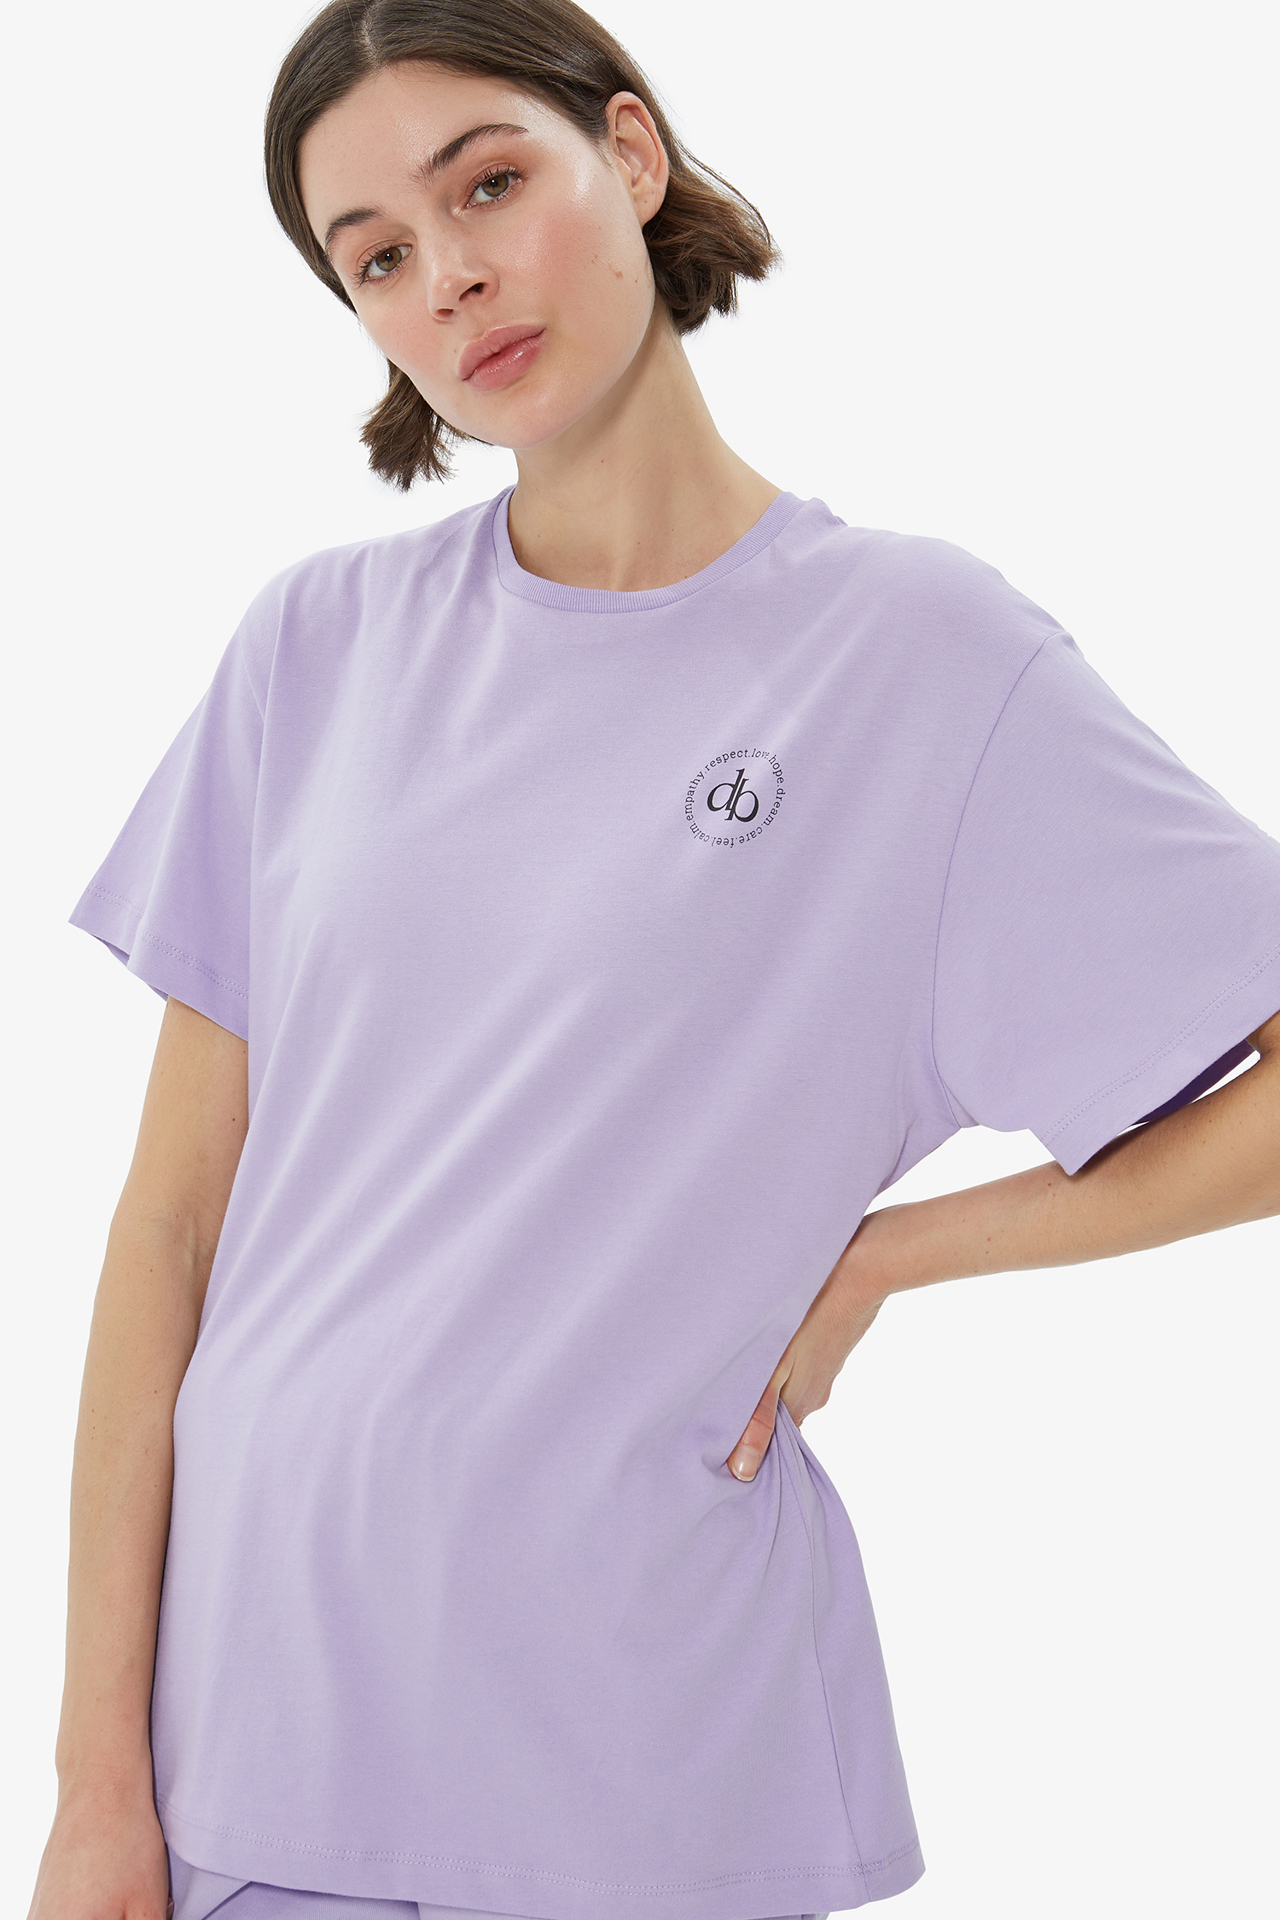 - Dahlia | Lilac - Bianca Tshirt Printed T-Shirt Pre